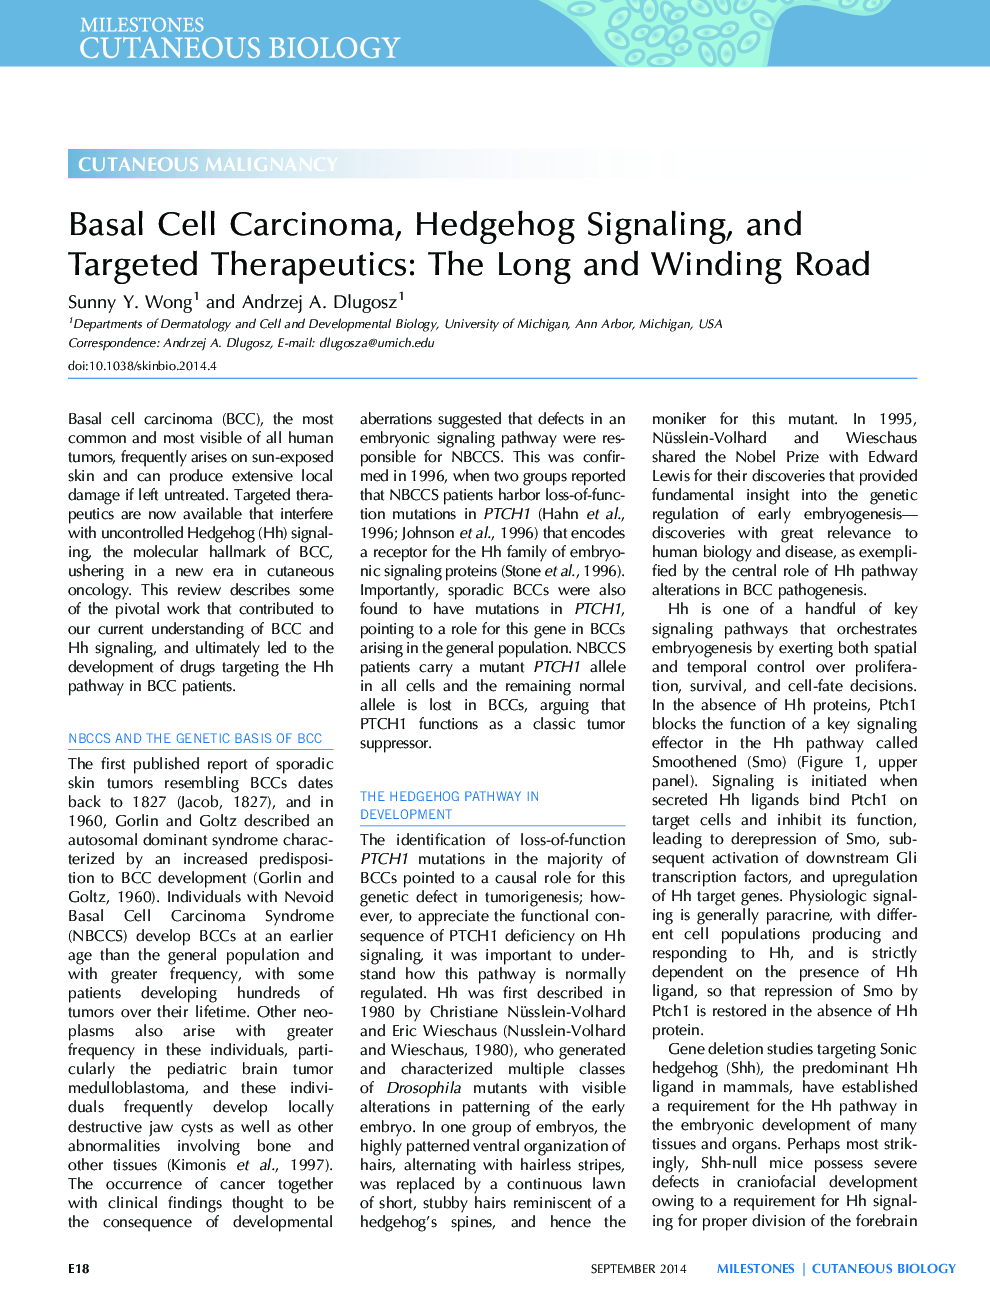 کارسینوم سلول پایه، سیگنالینگ خارپشت و درمان های هدفمند: جاده طولانی و پیچیده 